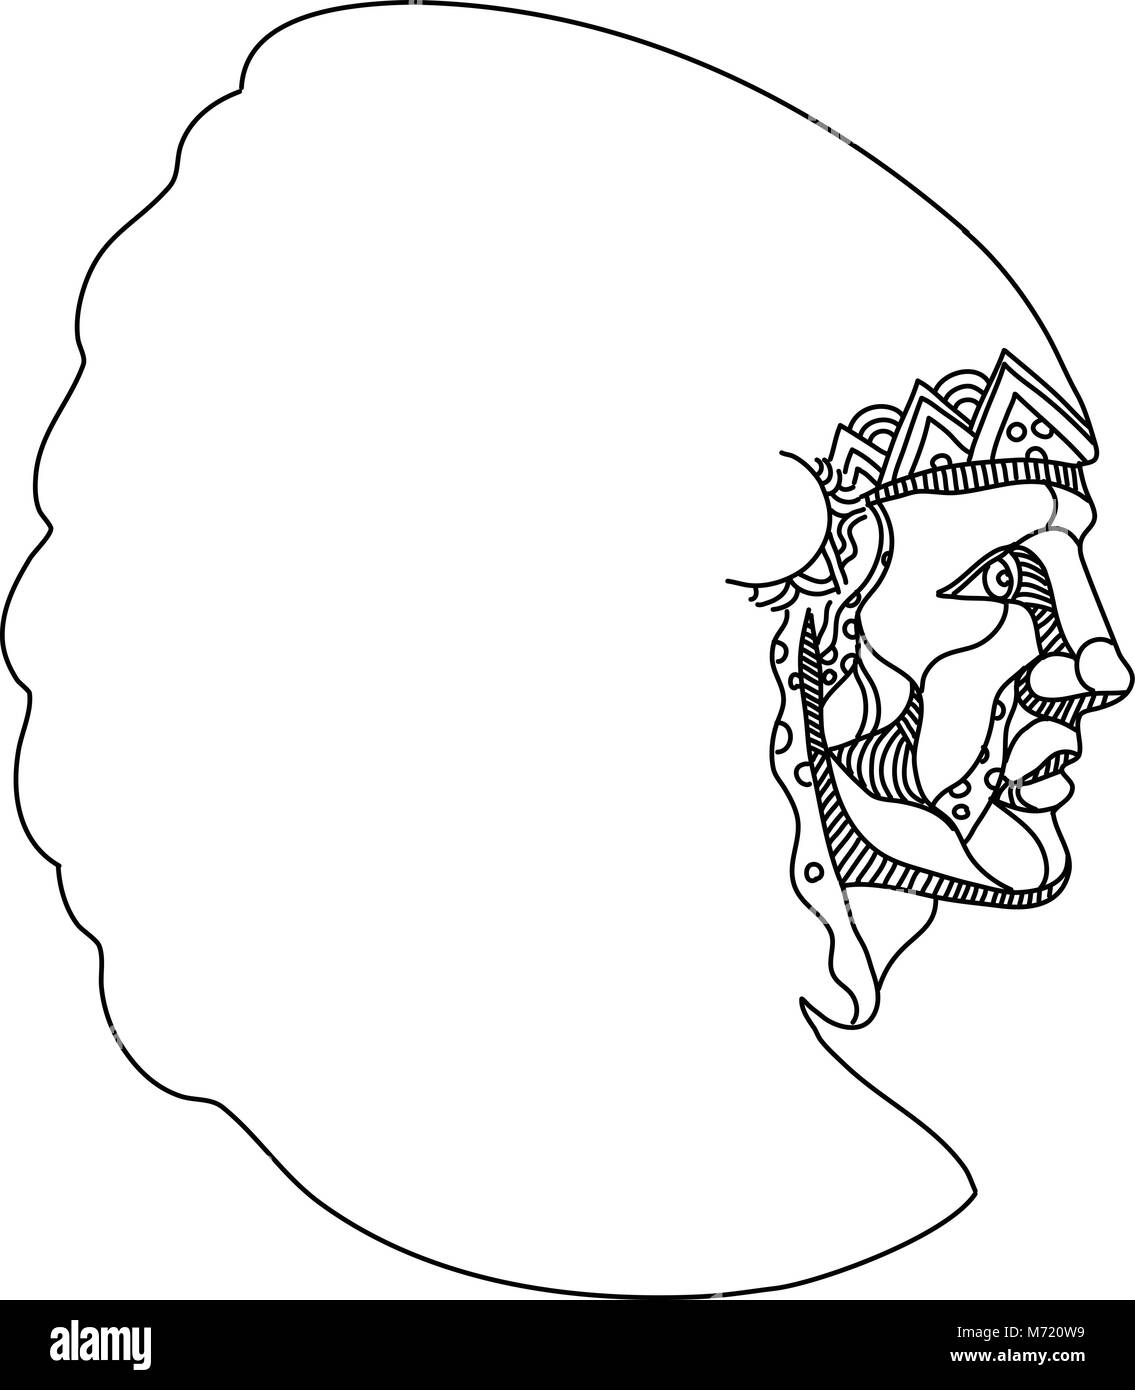 Doodle art illustration d'un Native American, American Indian, indiens ou autochtones américains, les populations autochtones des États-Unis, le port de guerre, Bonn Illustration de Vecteur